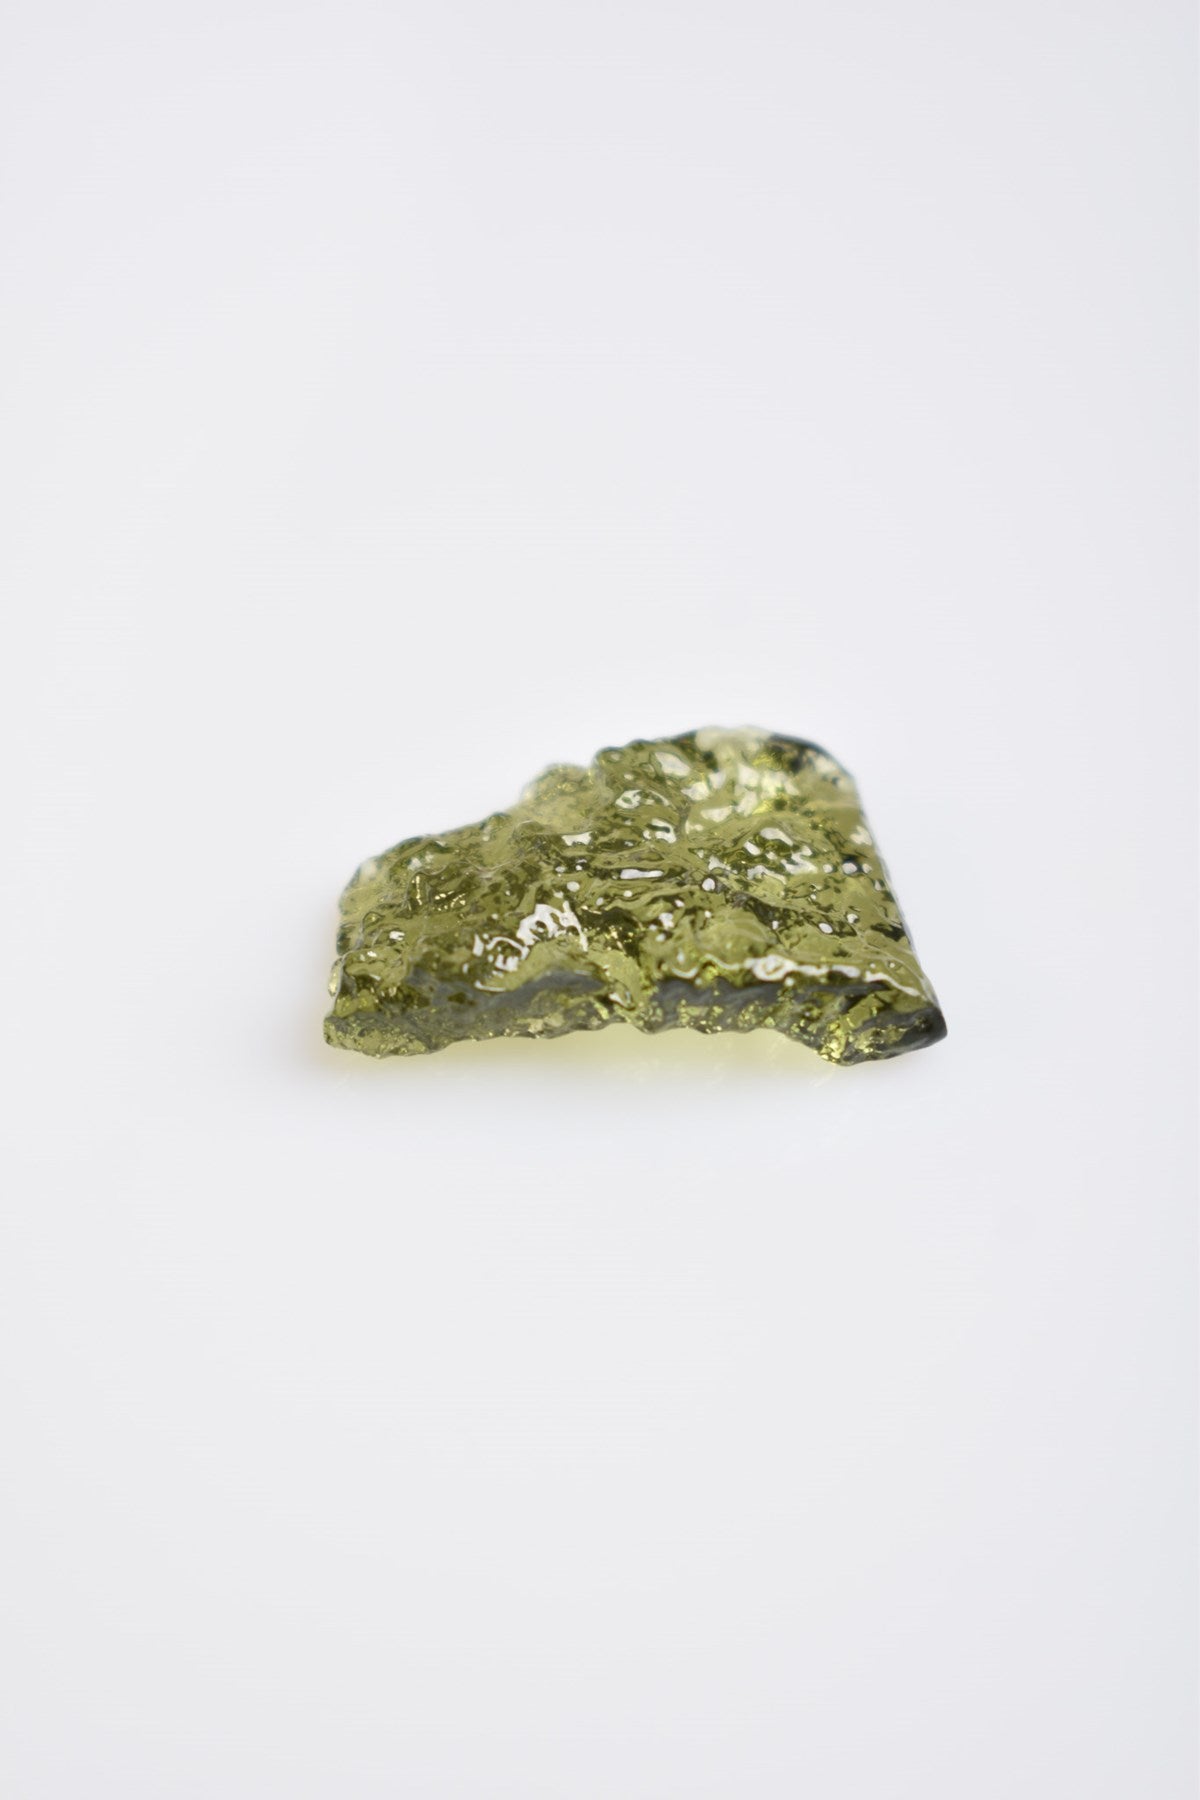 Moldavite Natural Gemstone Piece